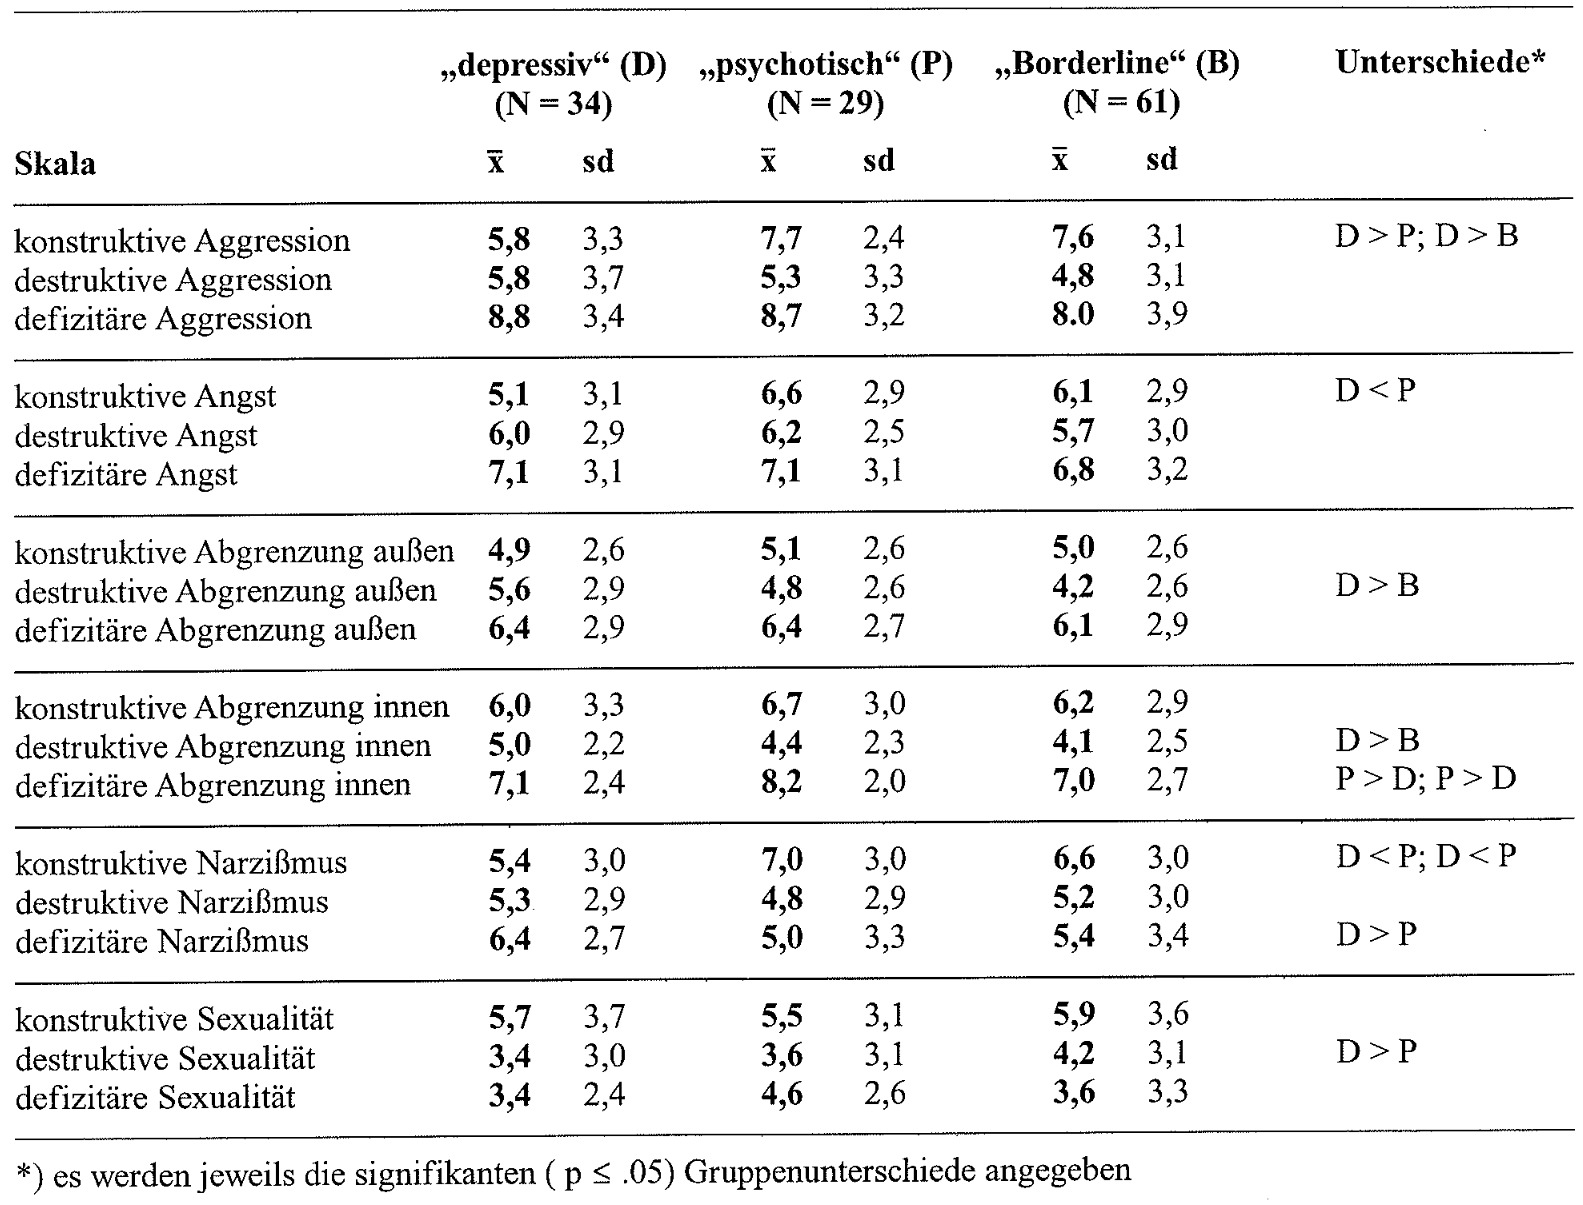 Tabelle 28: Mittelwerte (X) und Standardabweichungen (sd) der ISTA-Skalen bei den verschiedenen Diagnosegruppen der depressiven, psychotischen und Borderline-Struktur